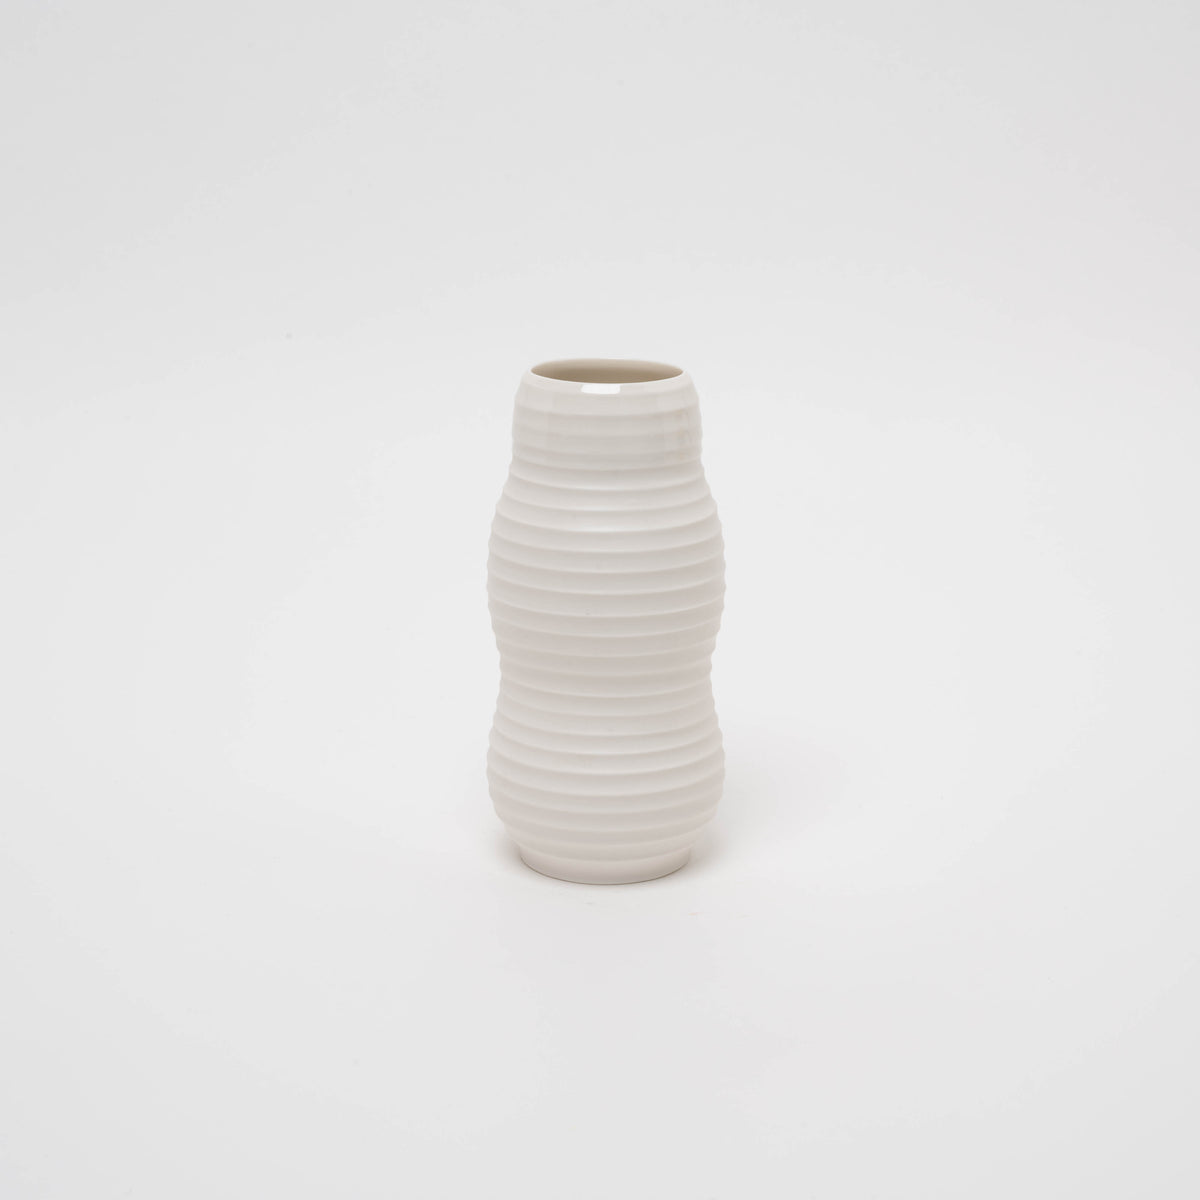 Porcelain vase No. 17